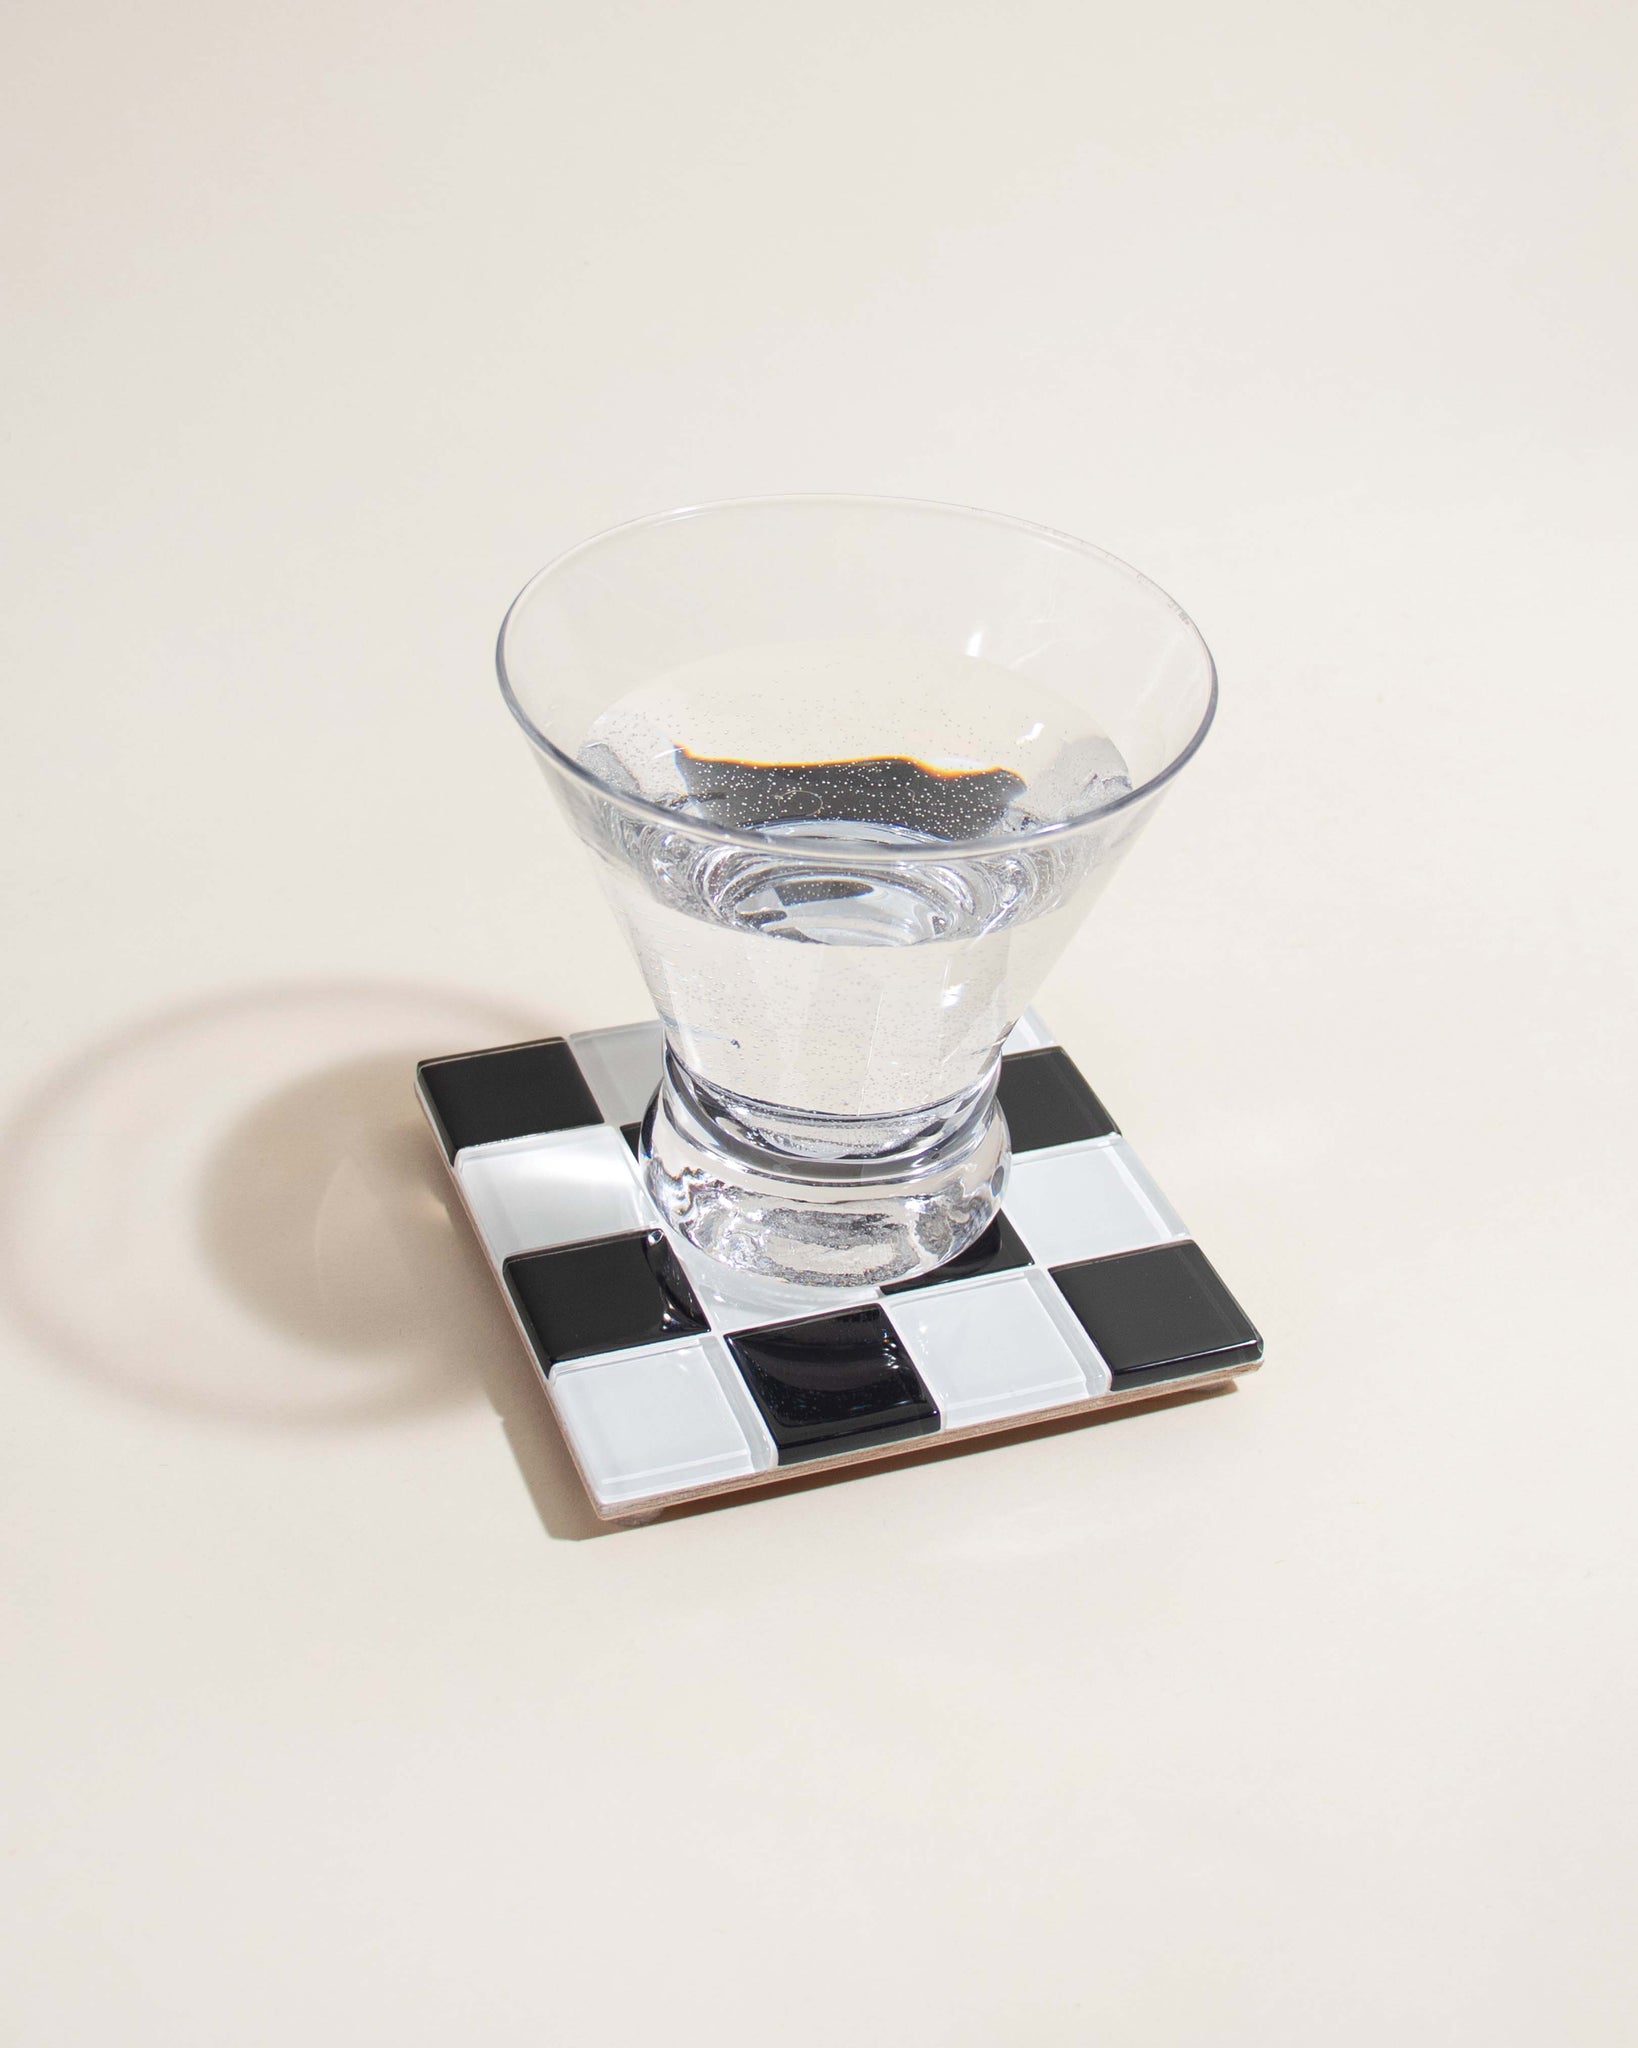 GLASS TILE COASTER - Checkered